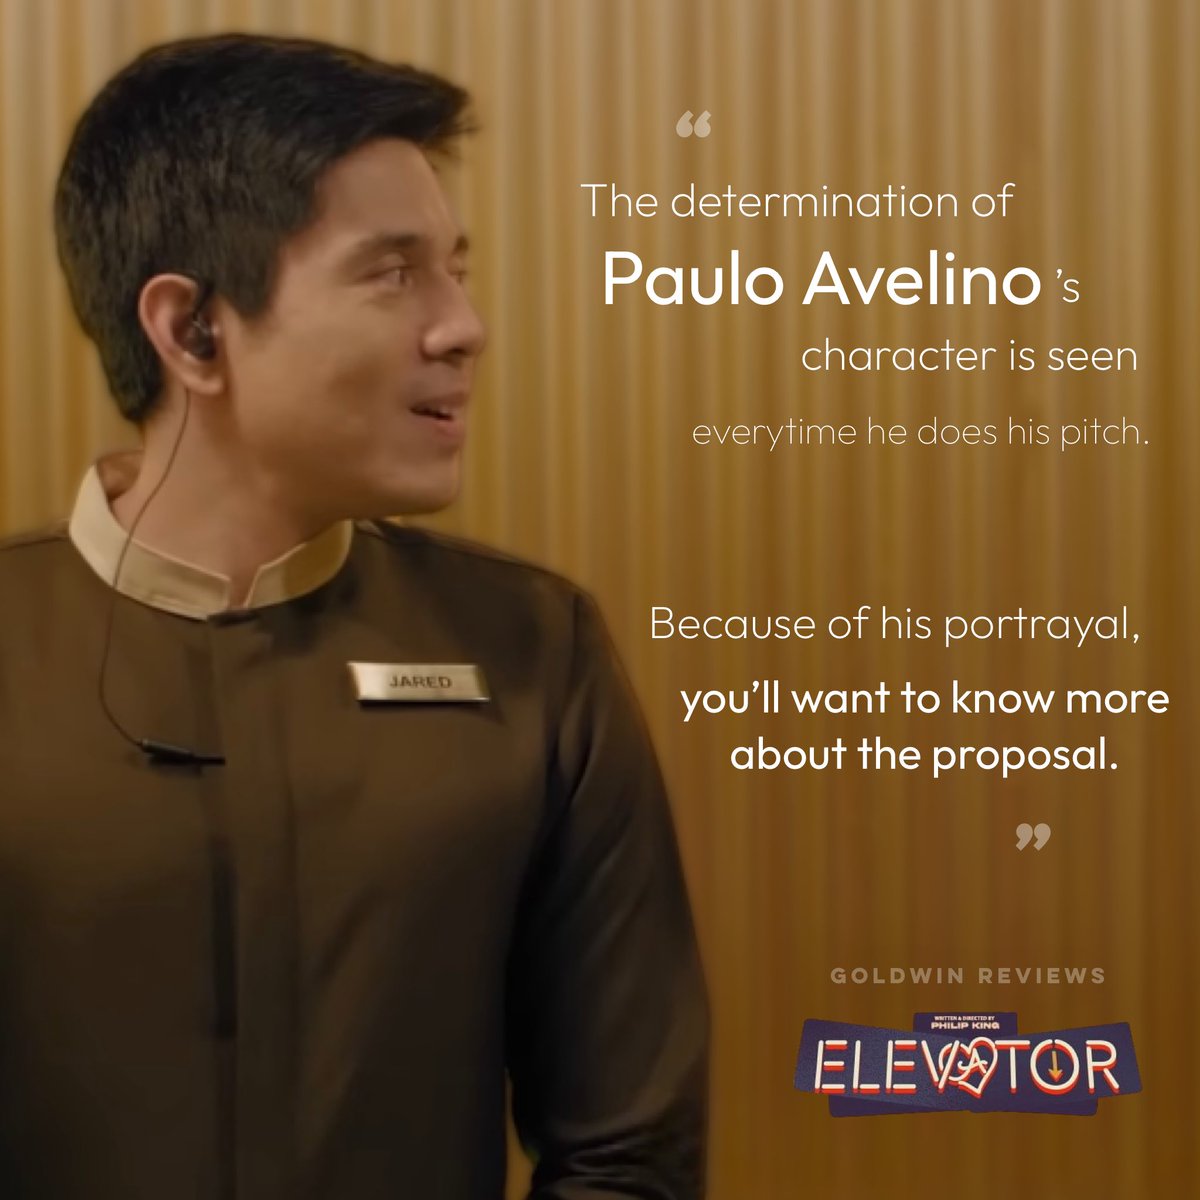 Listen to Paulo Avelino’s pitch!

#ElevatorTheMovie #PauloAvelino